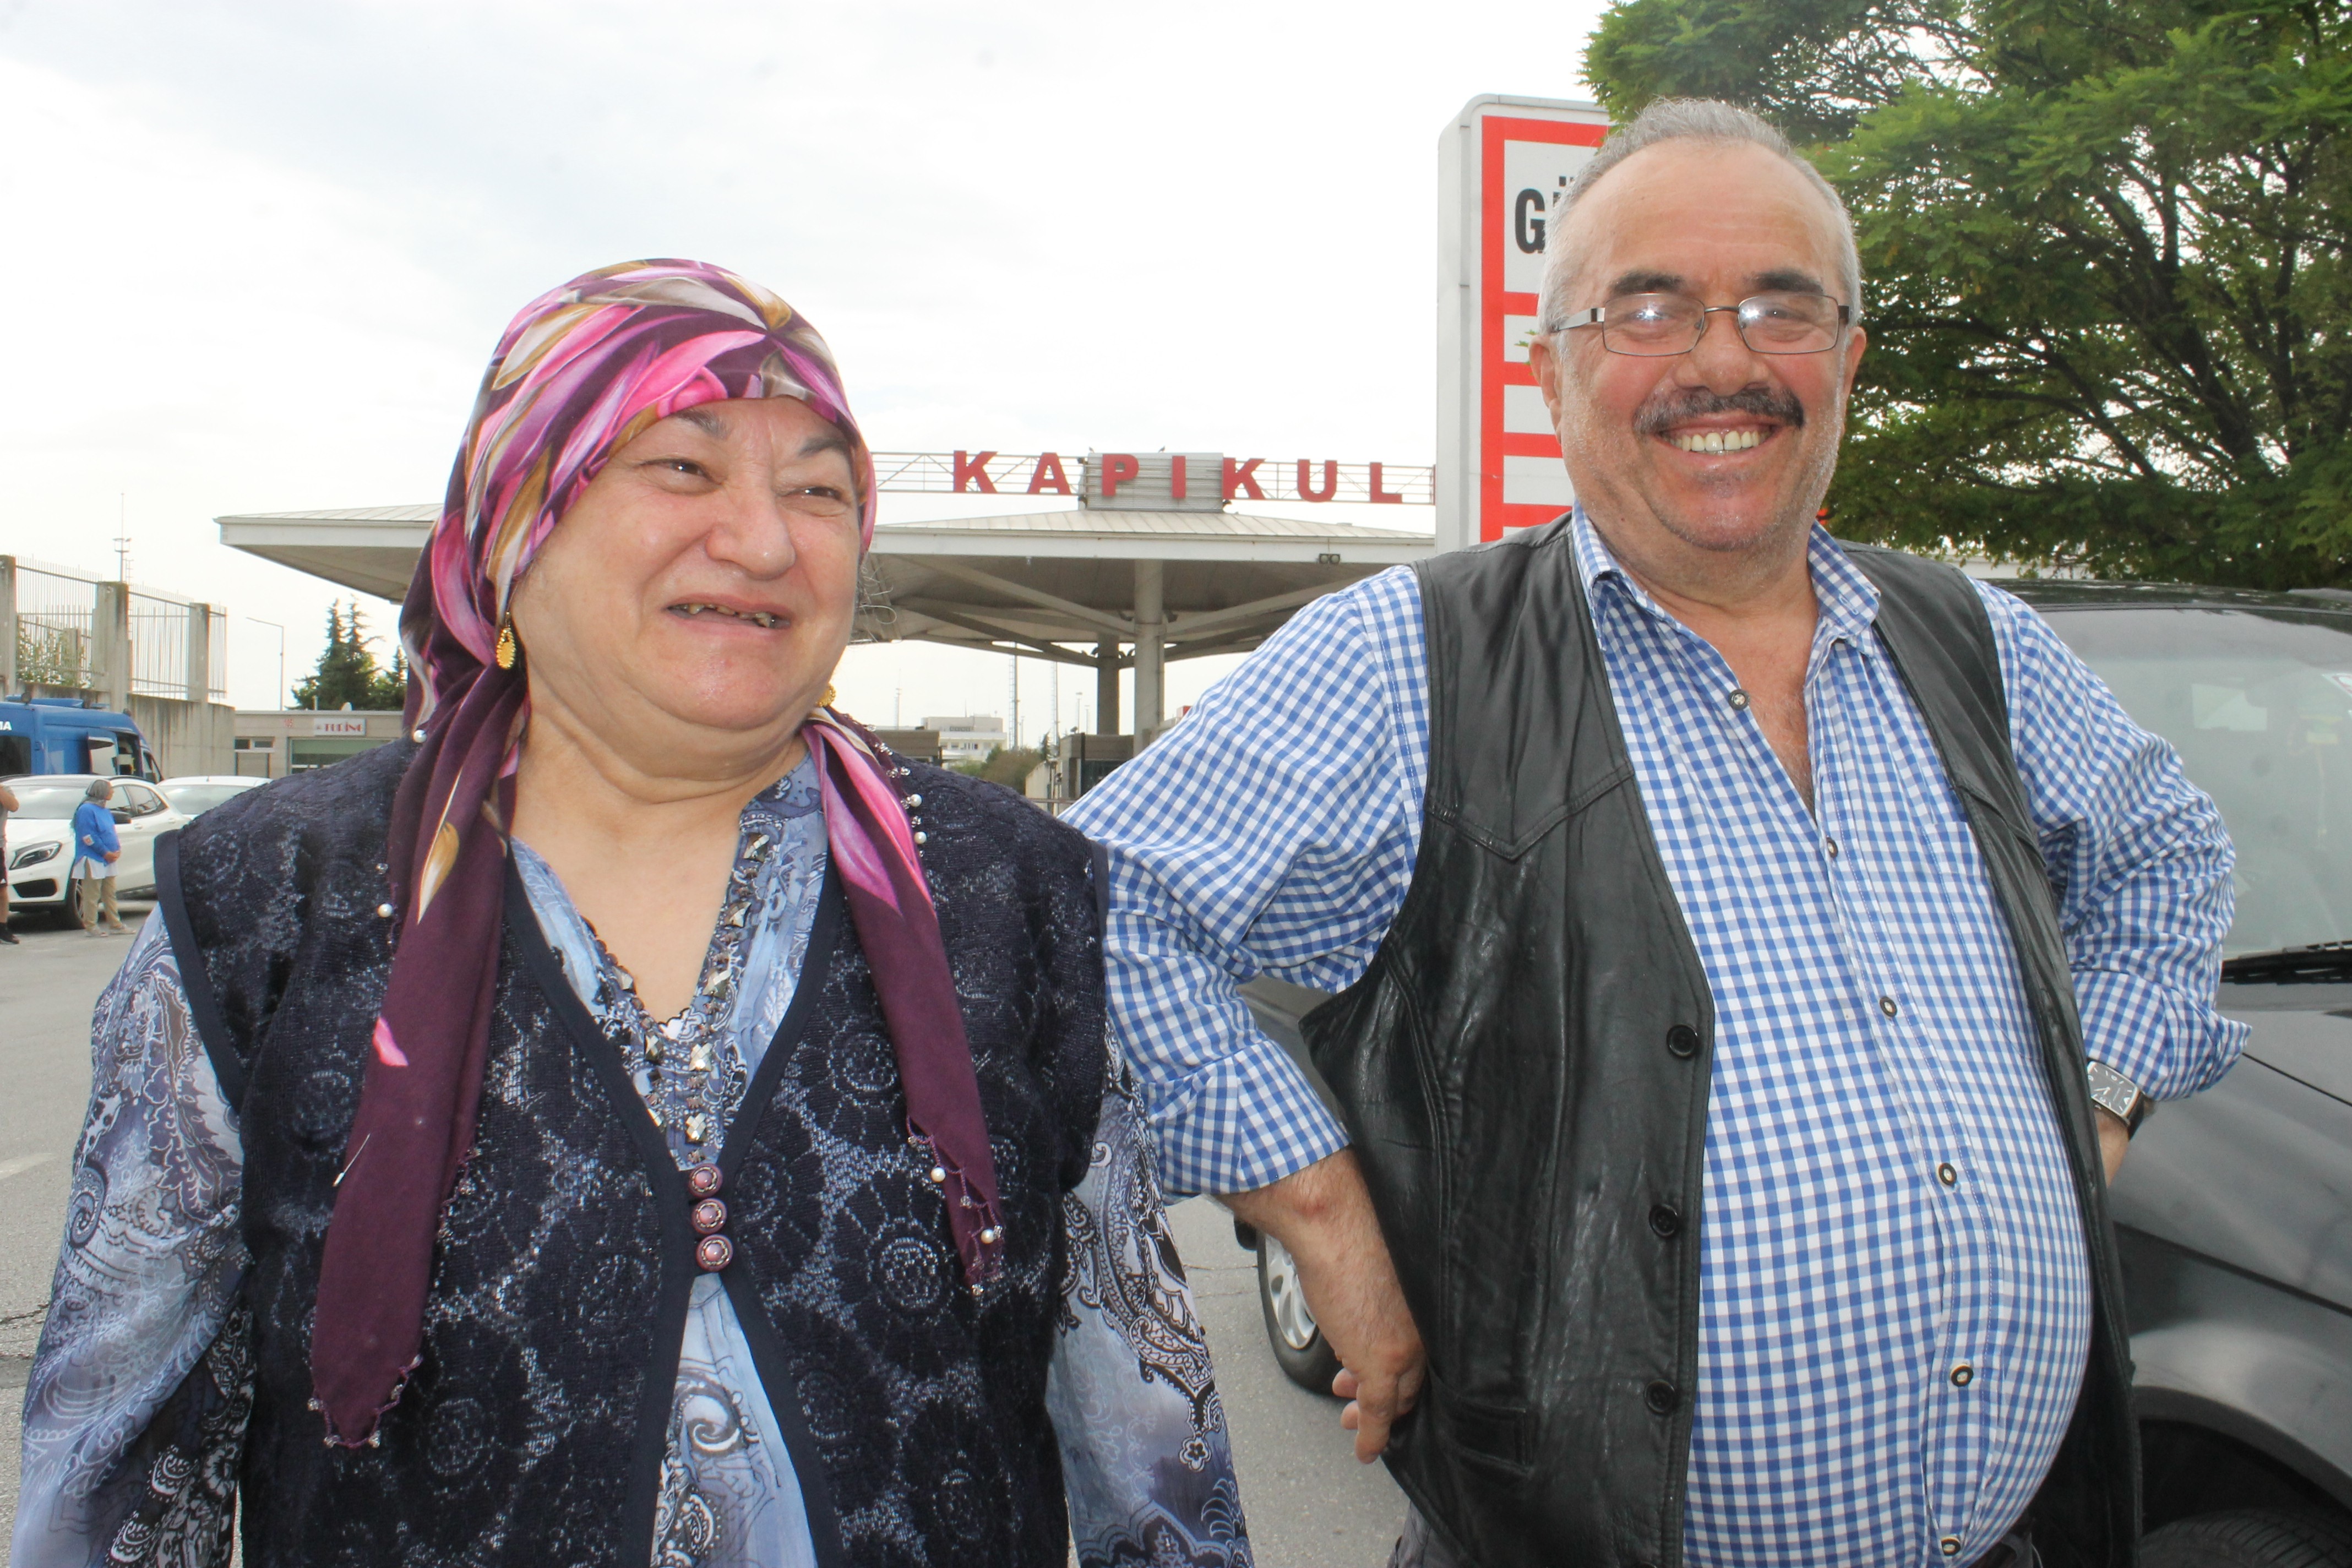 Türkiye’ye gelen gurbetçiler duygu dolu anlar yaşıyor